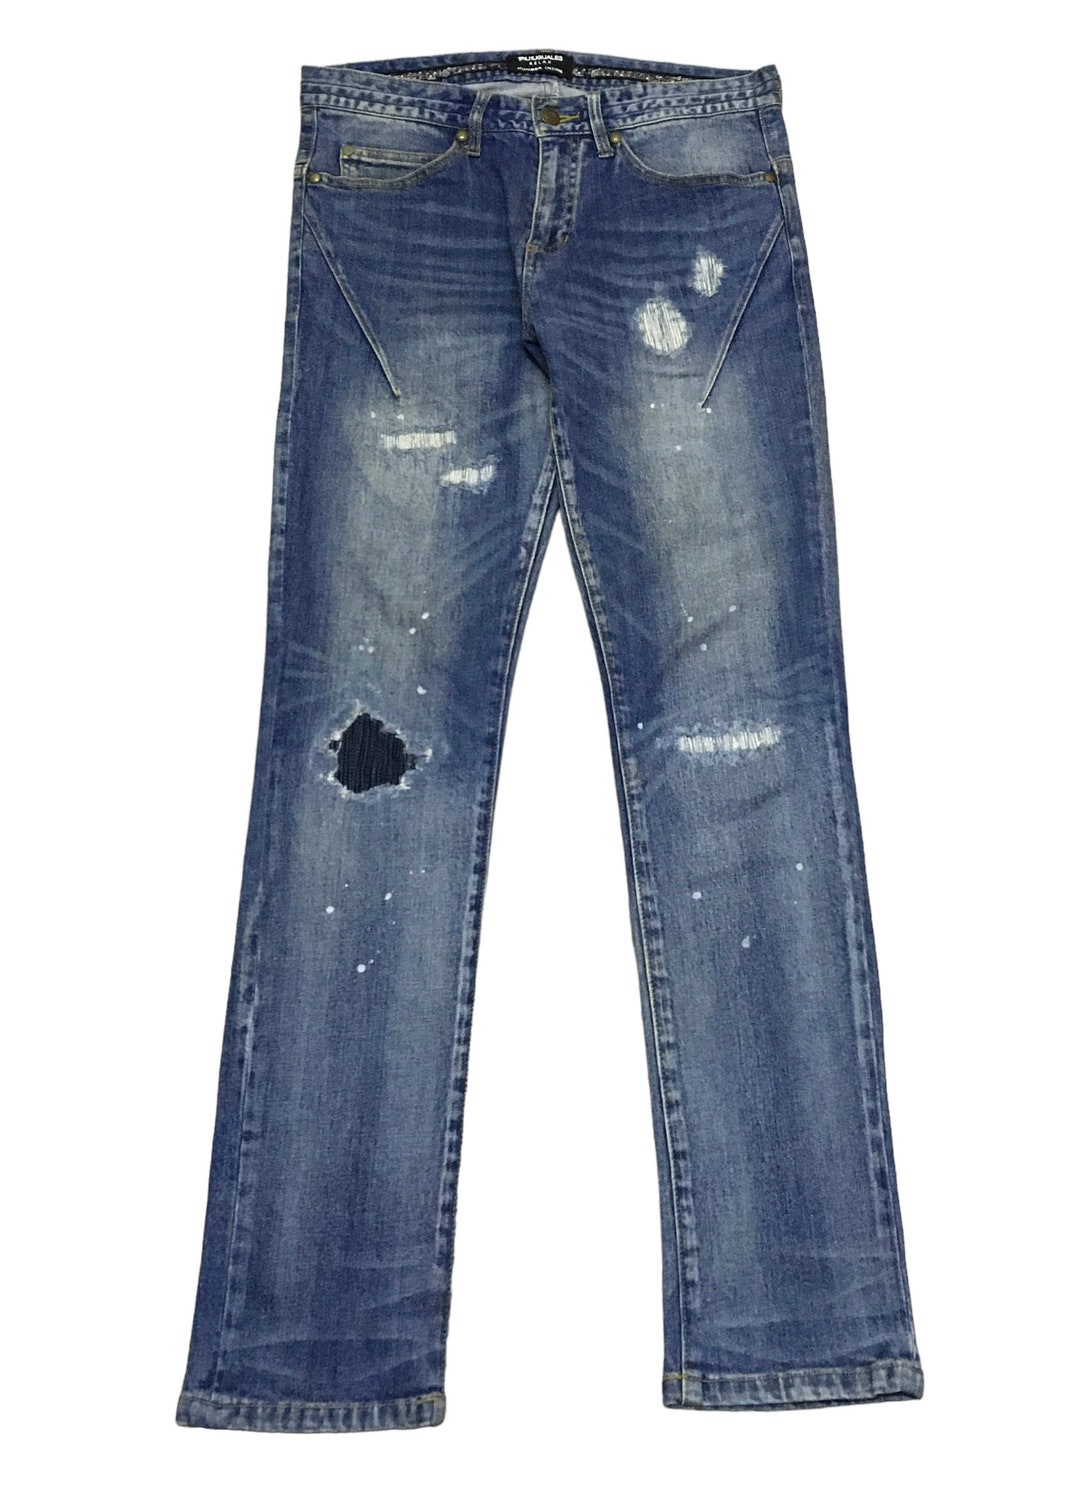 Rare Design Vintage Japanese Brand Number Nine Jeans 2000s - Etsy